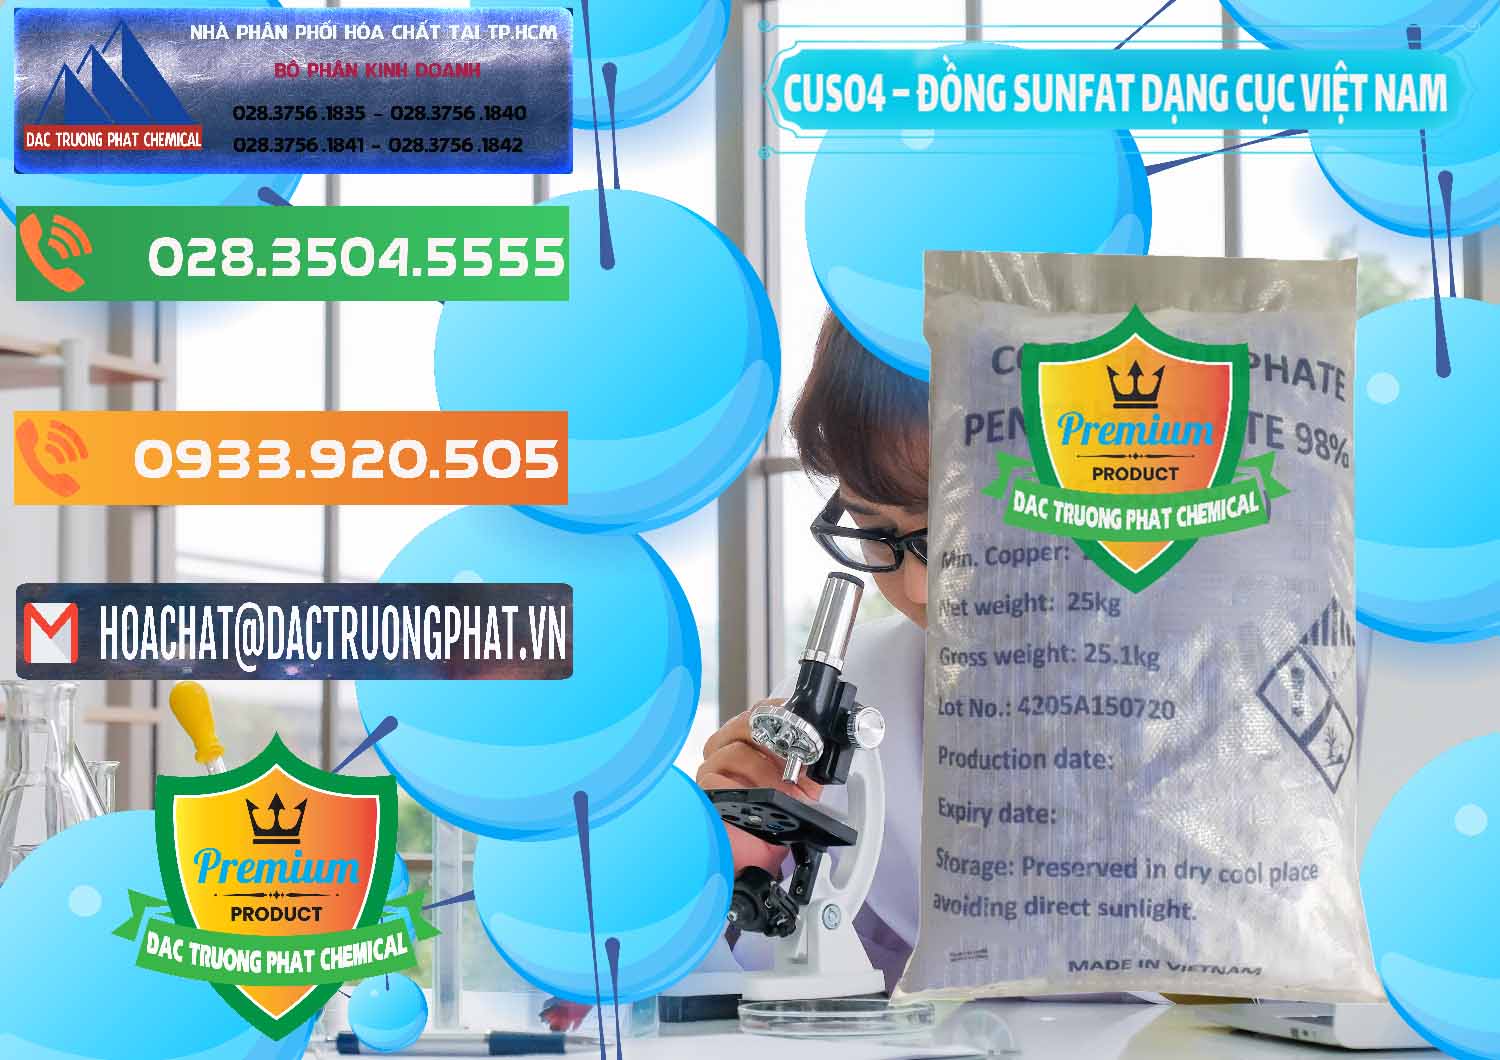 Công ty bán & phân phối CUSO4 – Đồng Sunfat Dạng Cục Việt Nam - 0303 - Cty chuyên bán _ cung ứng hóa chất tại TP.HCM - hoachatxulynuoc.com.vn